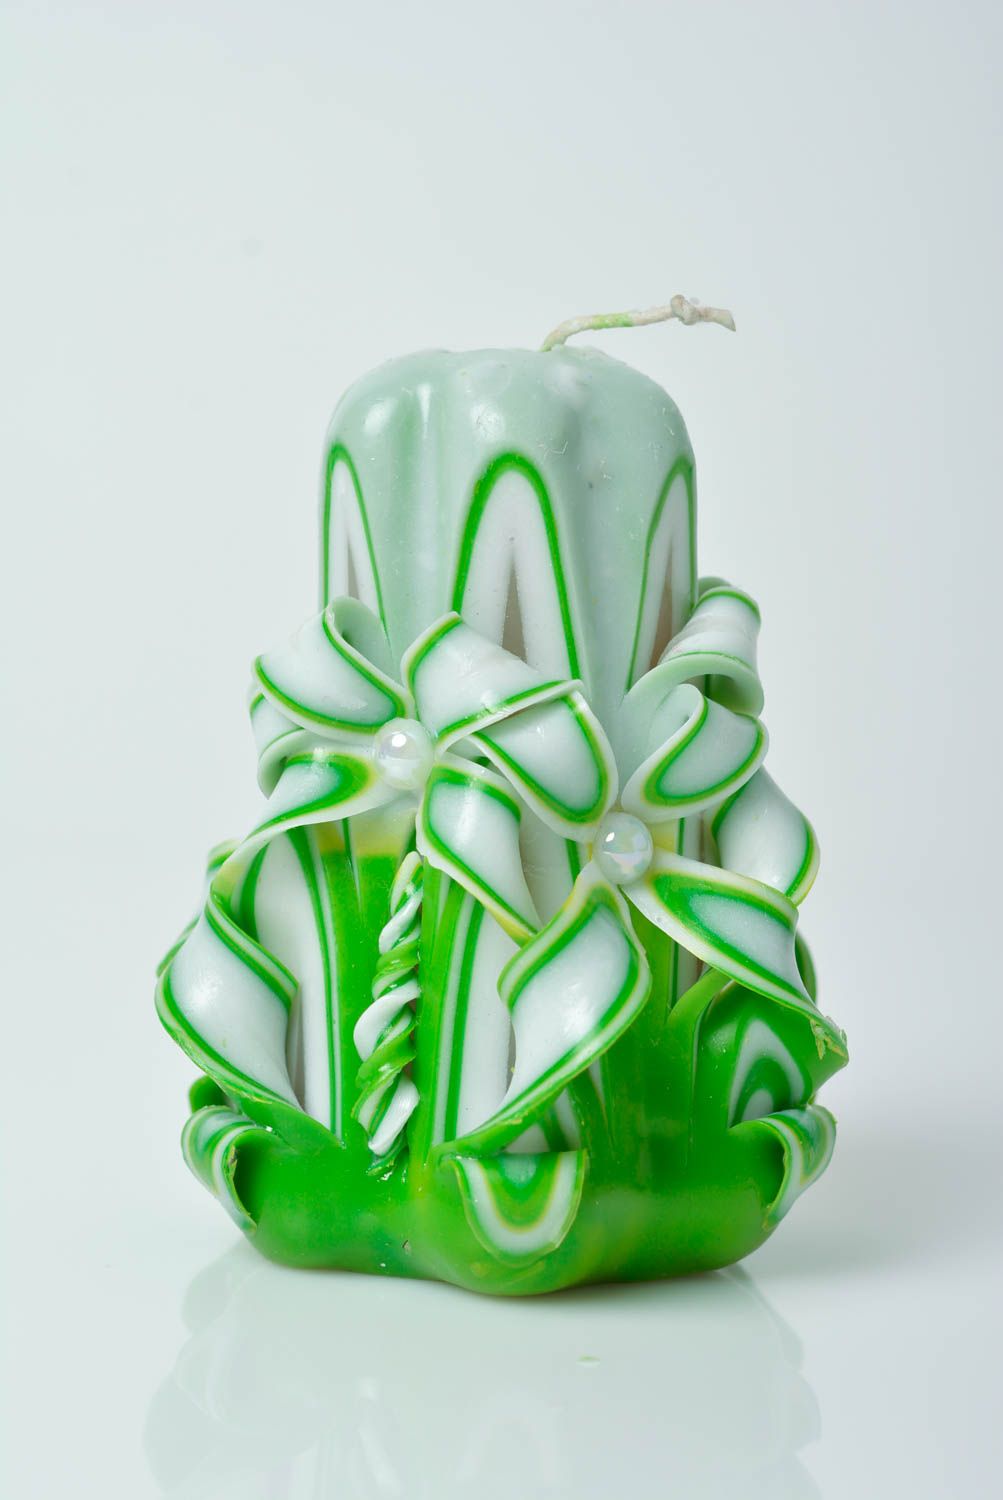 Парафиновая свеча ручной работы декорированная в технике ручной резьбы зеленая фото 1